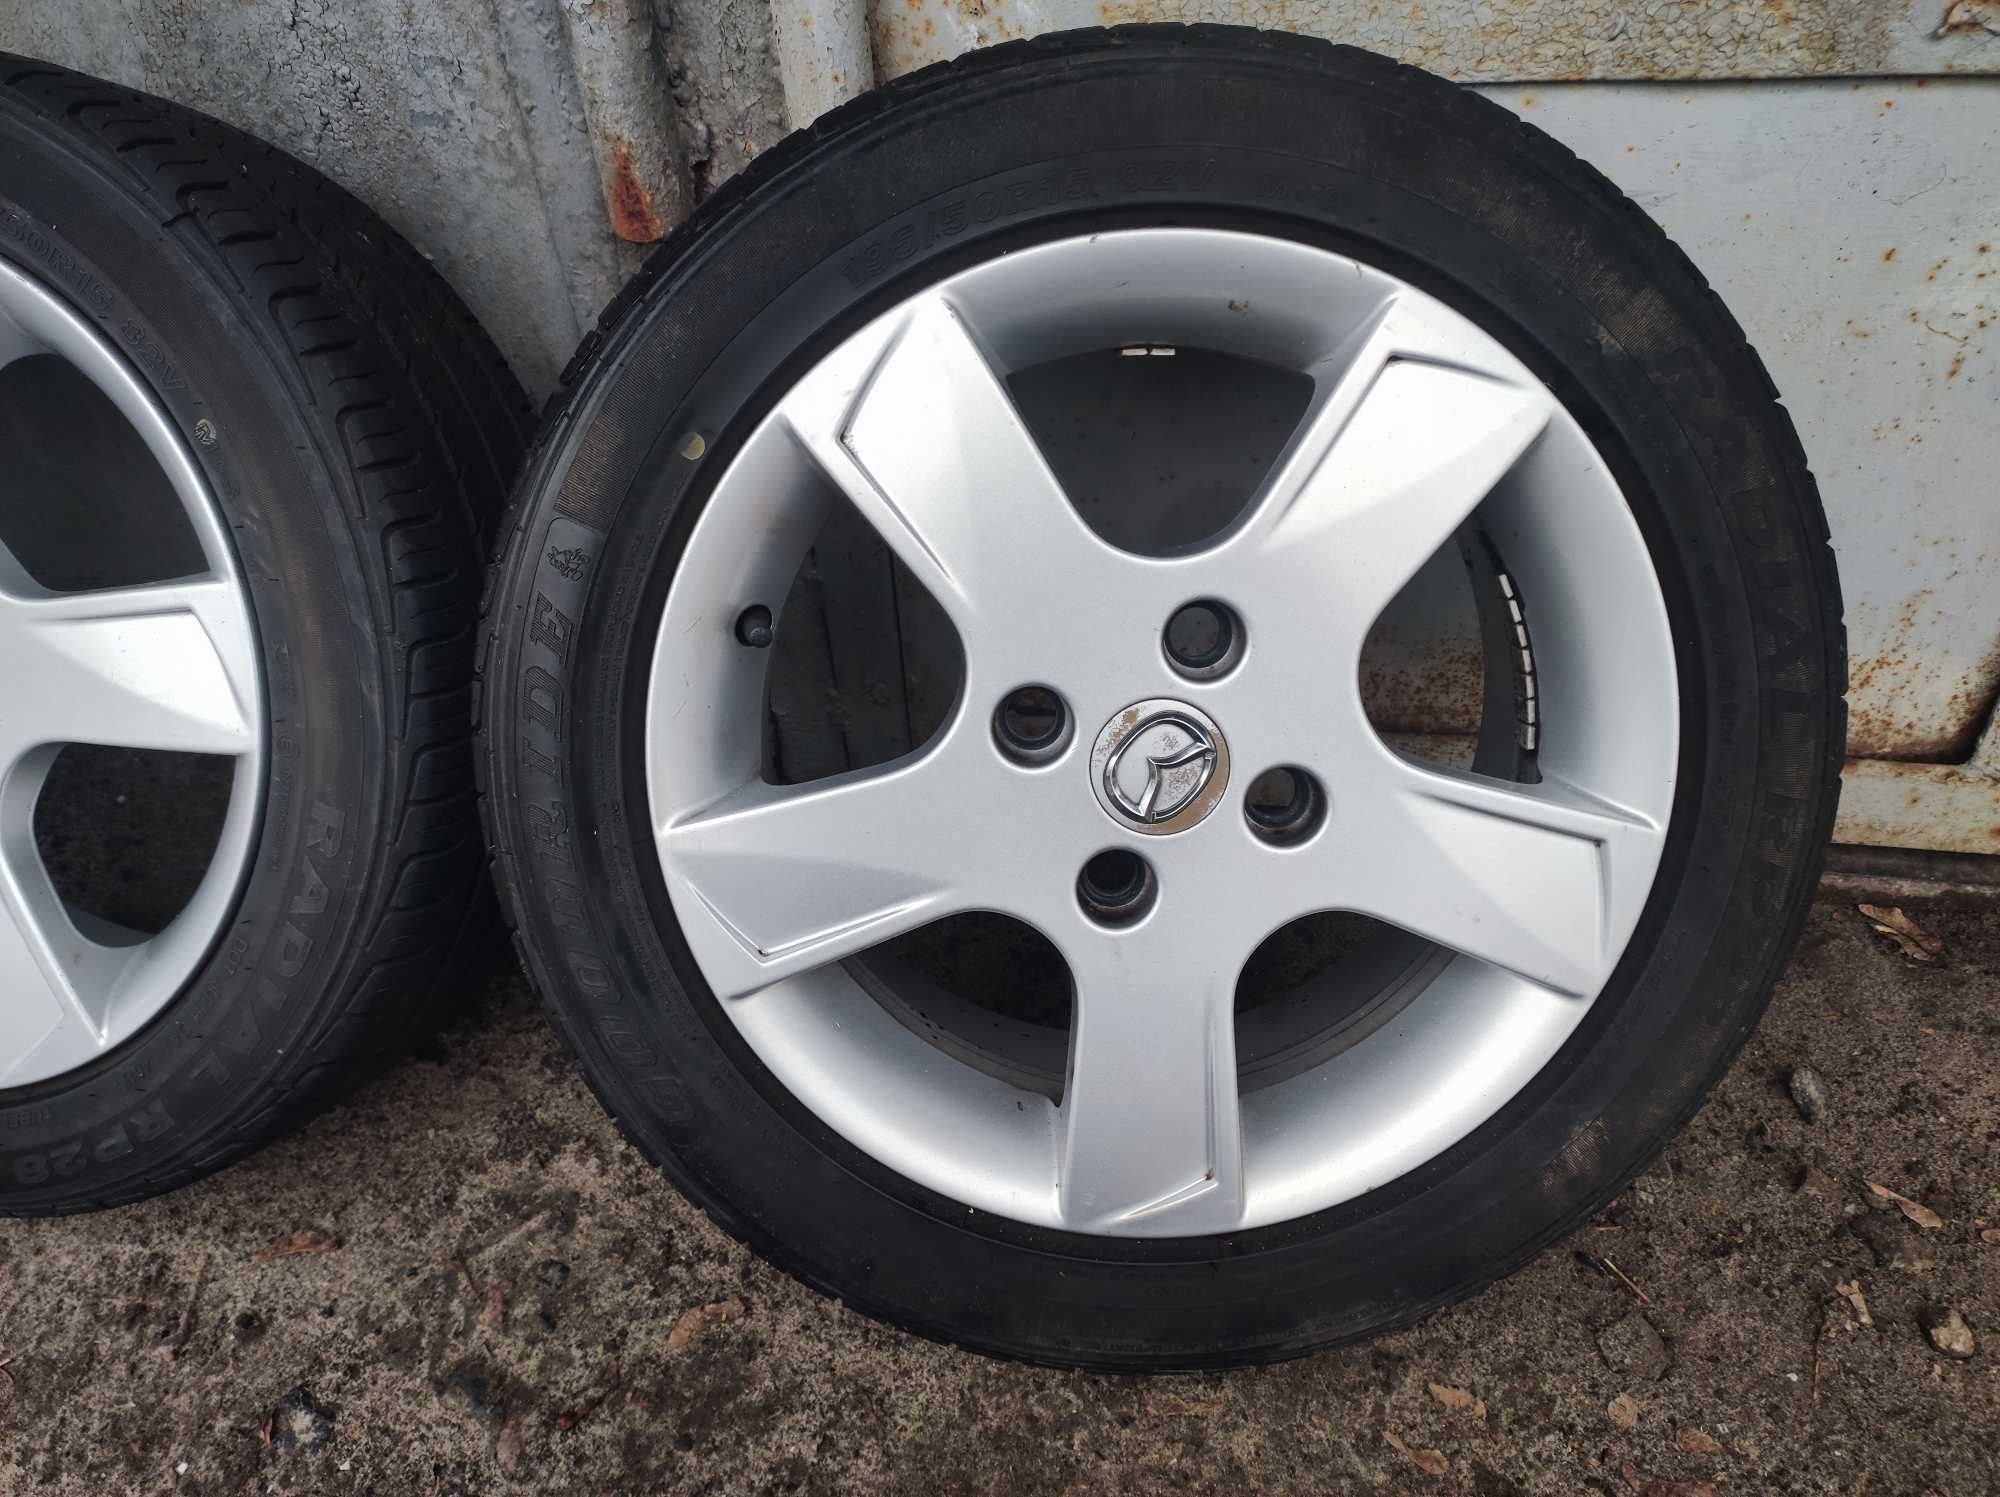 Mazda Комплект литые диски + резина Goodride 195/50 R15 , 6мм